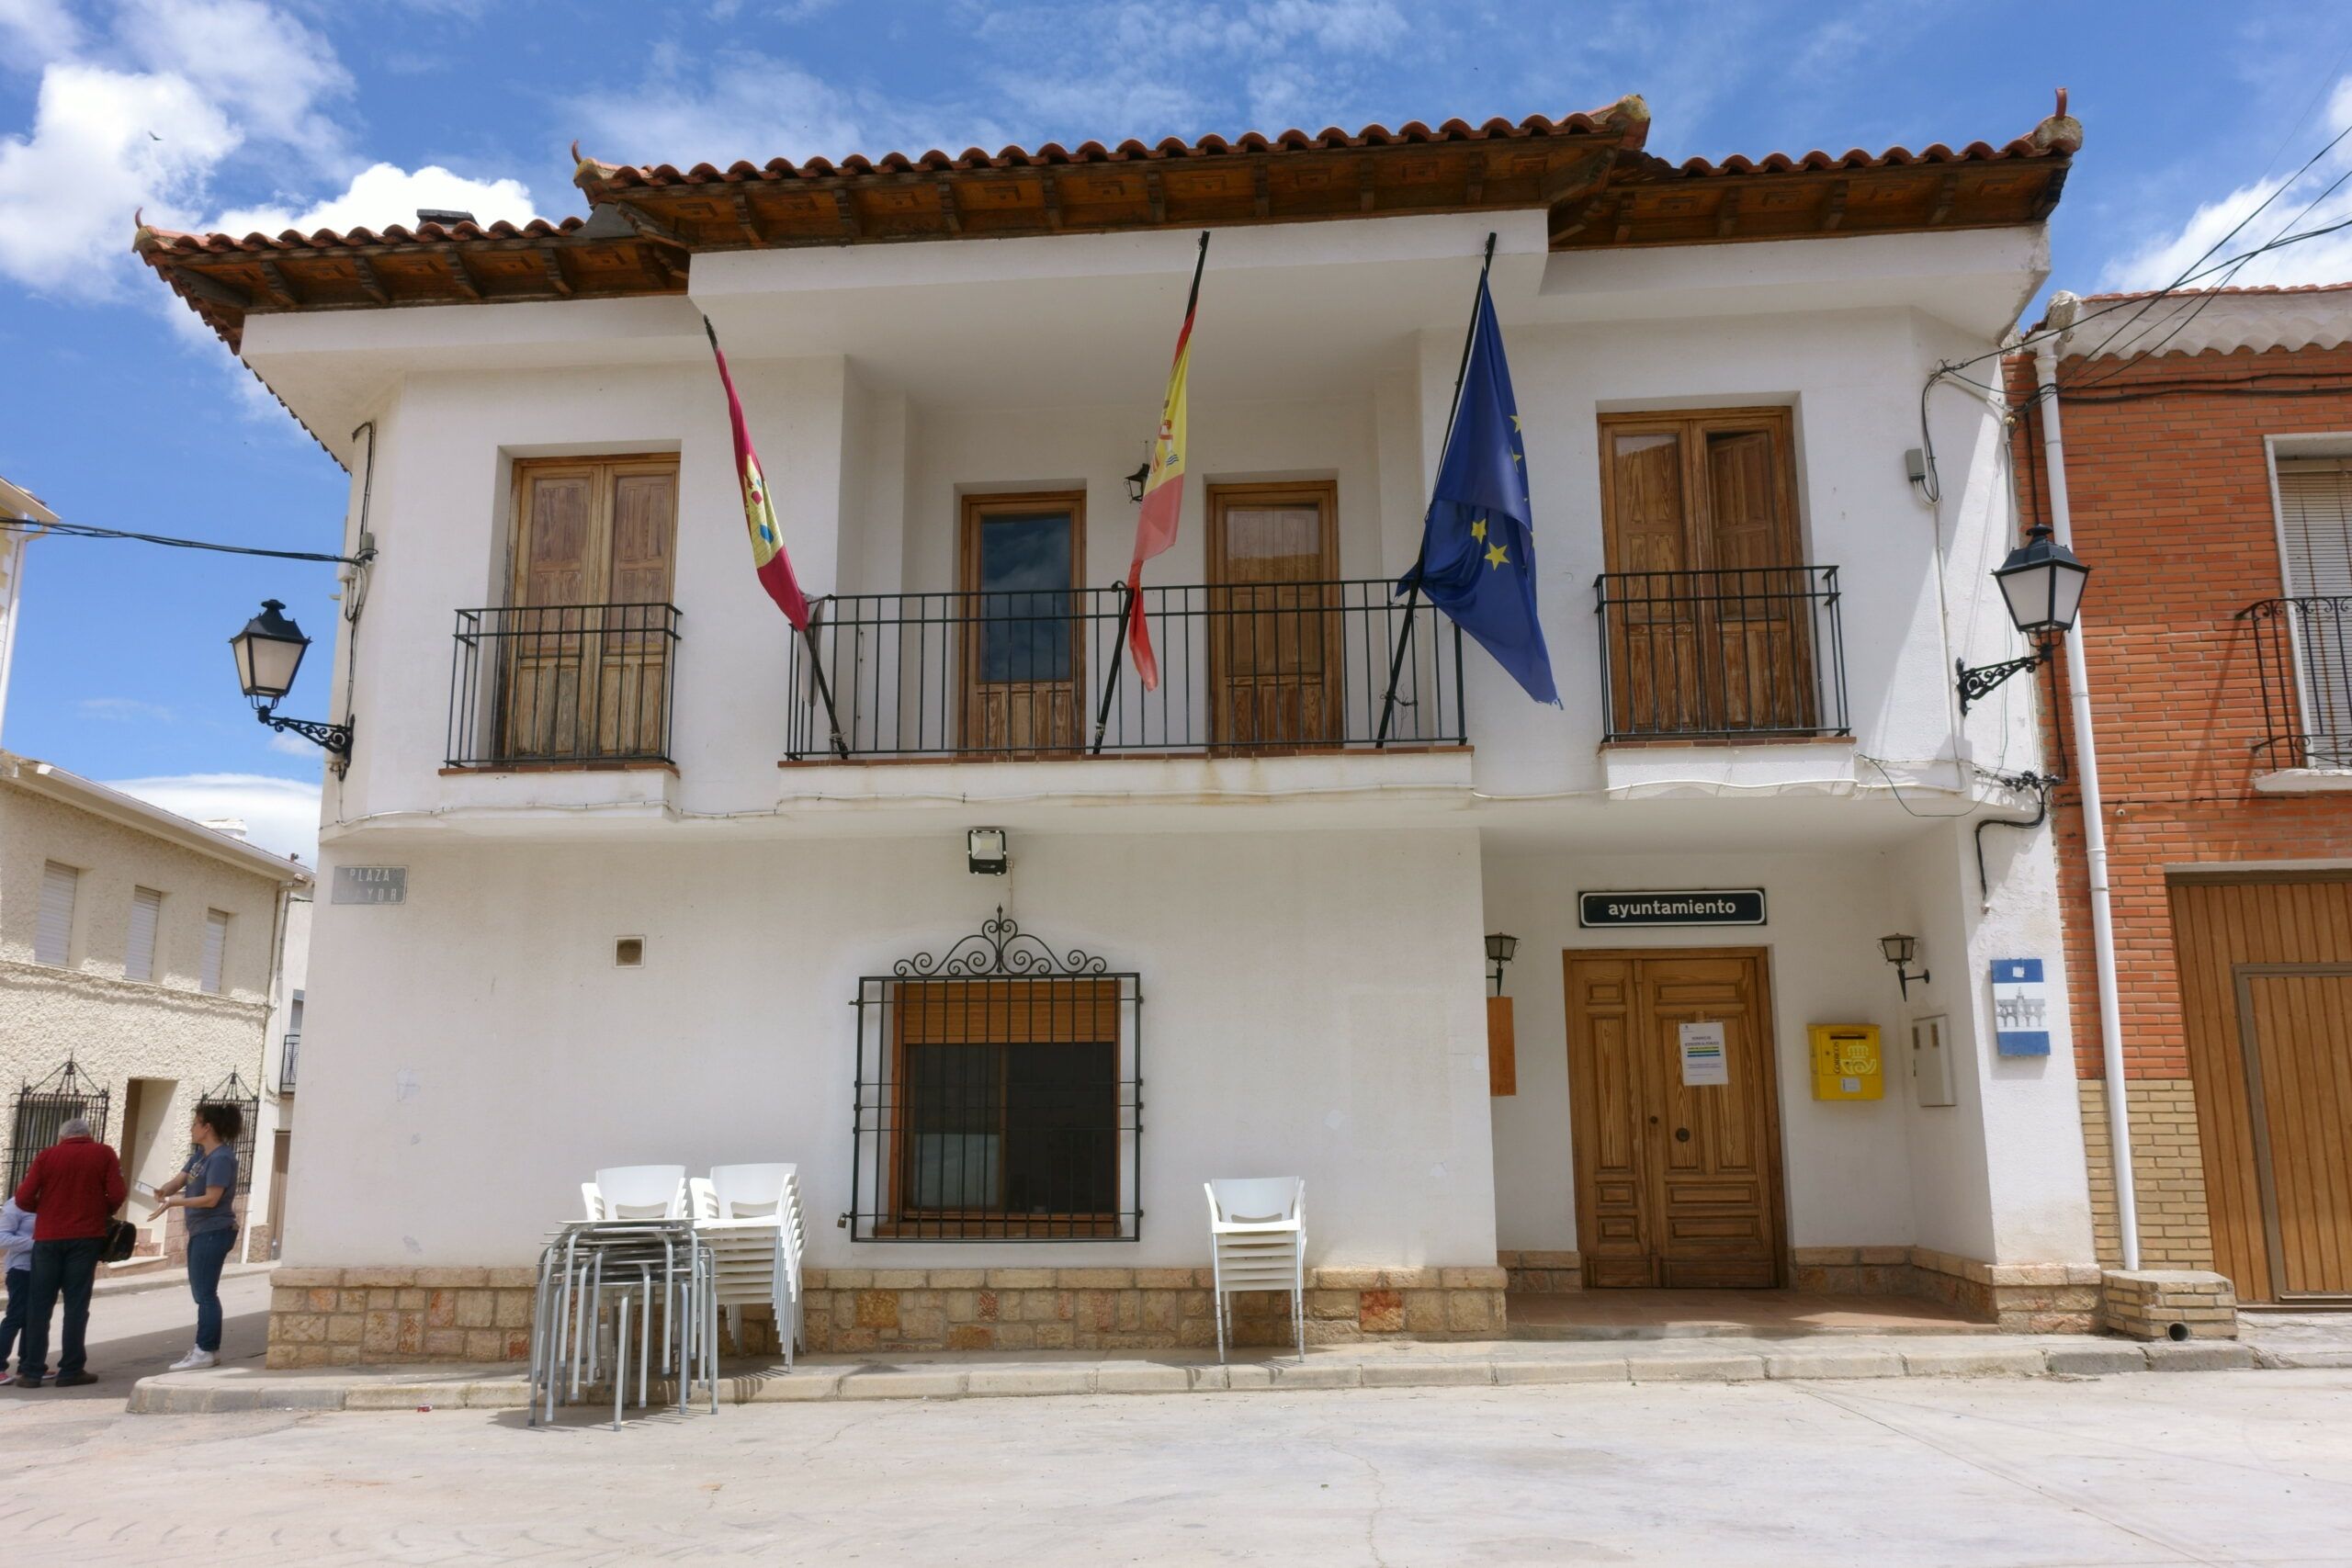 Ayuntamiento de Villalgordo del Marquesado / Creative Commons